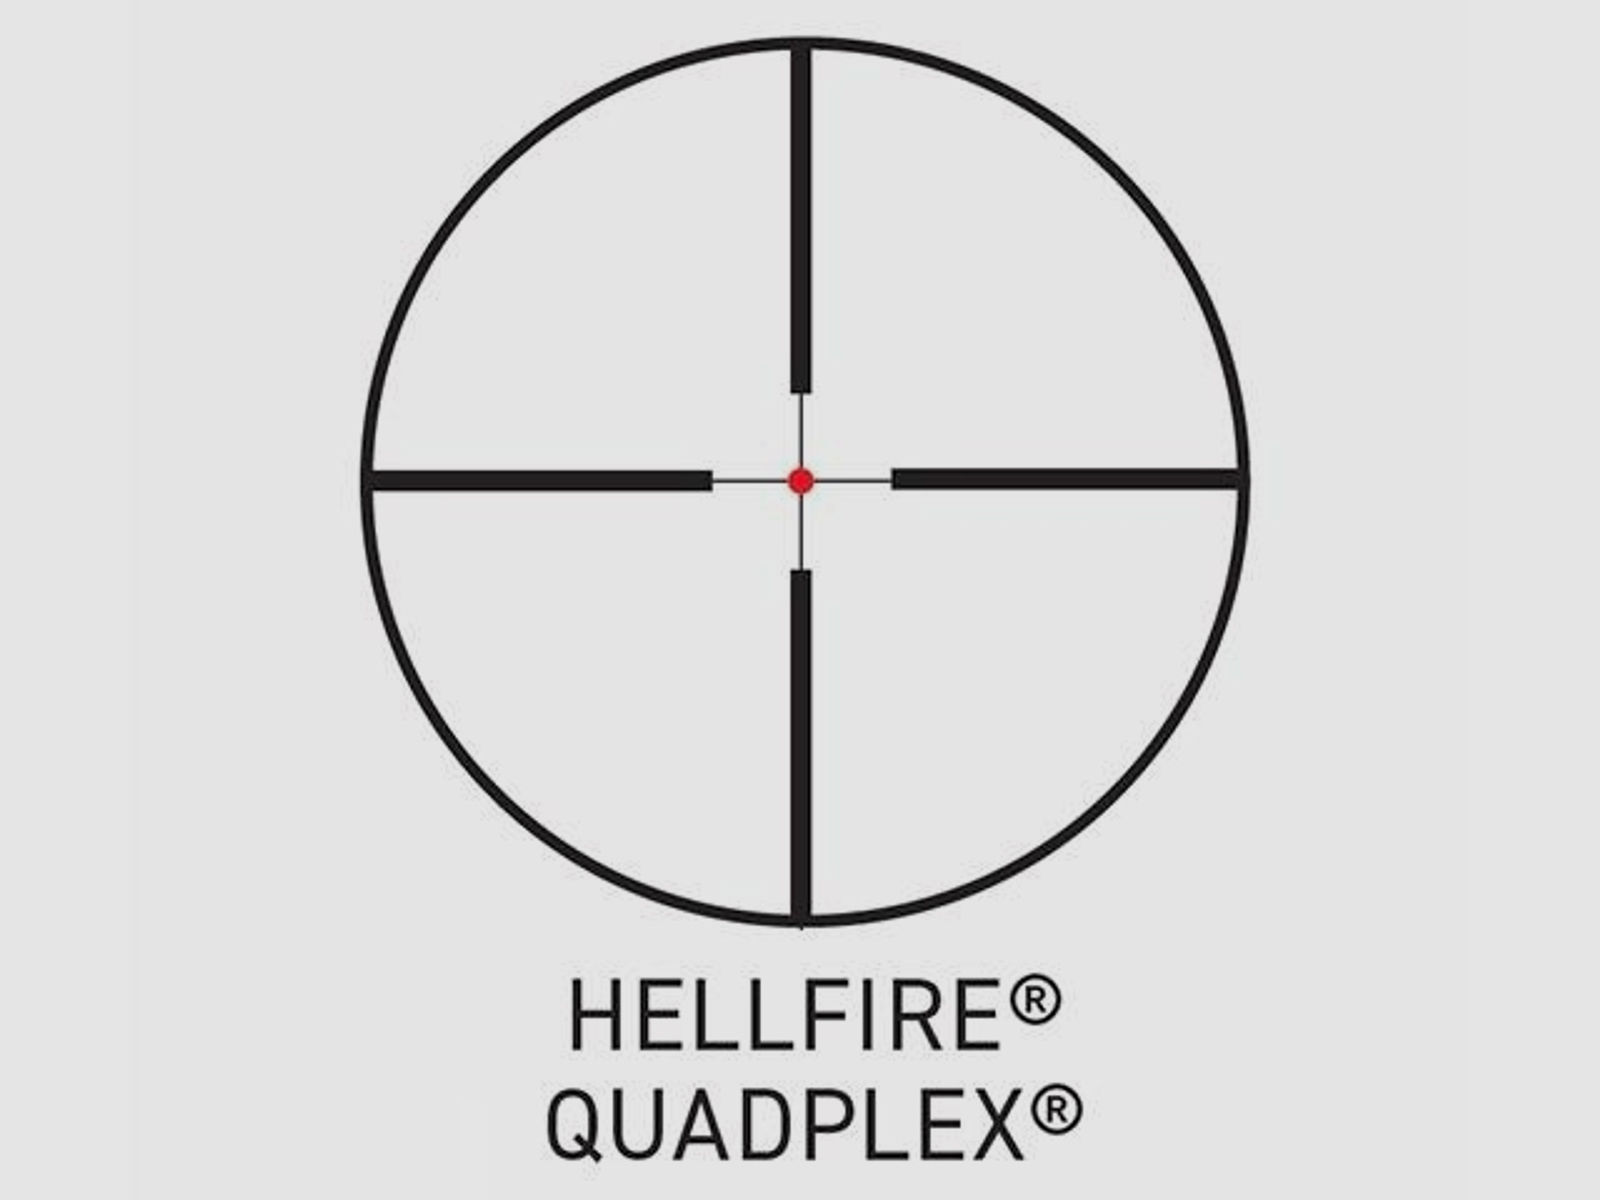 WHISKEY3 Zielfernrohr 4-12x50 mit HellFire Quadplex Absehen